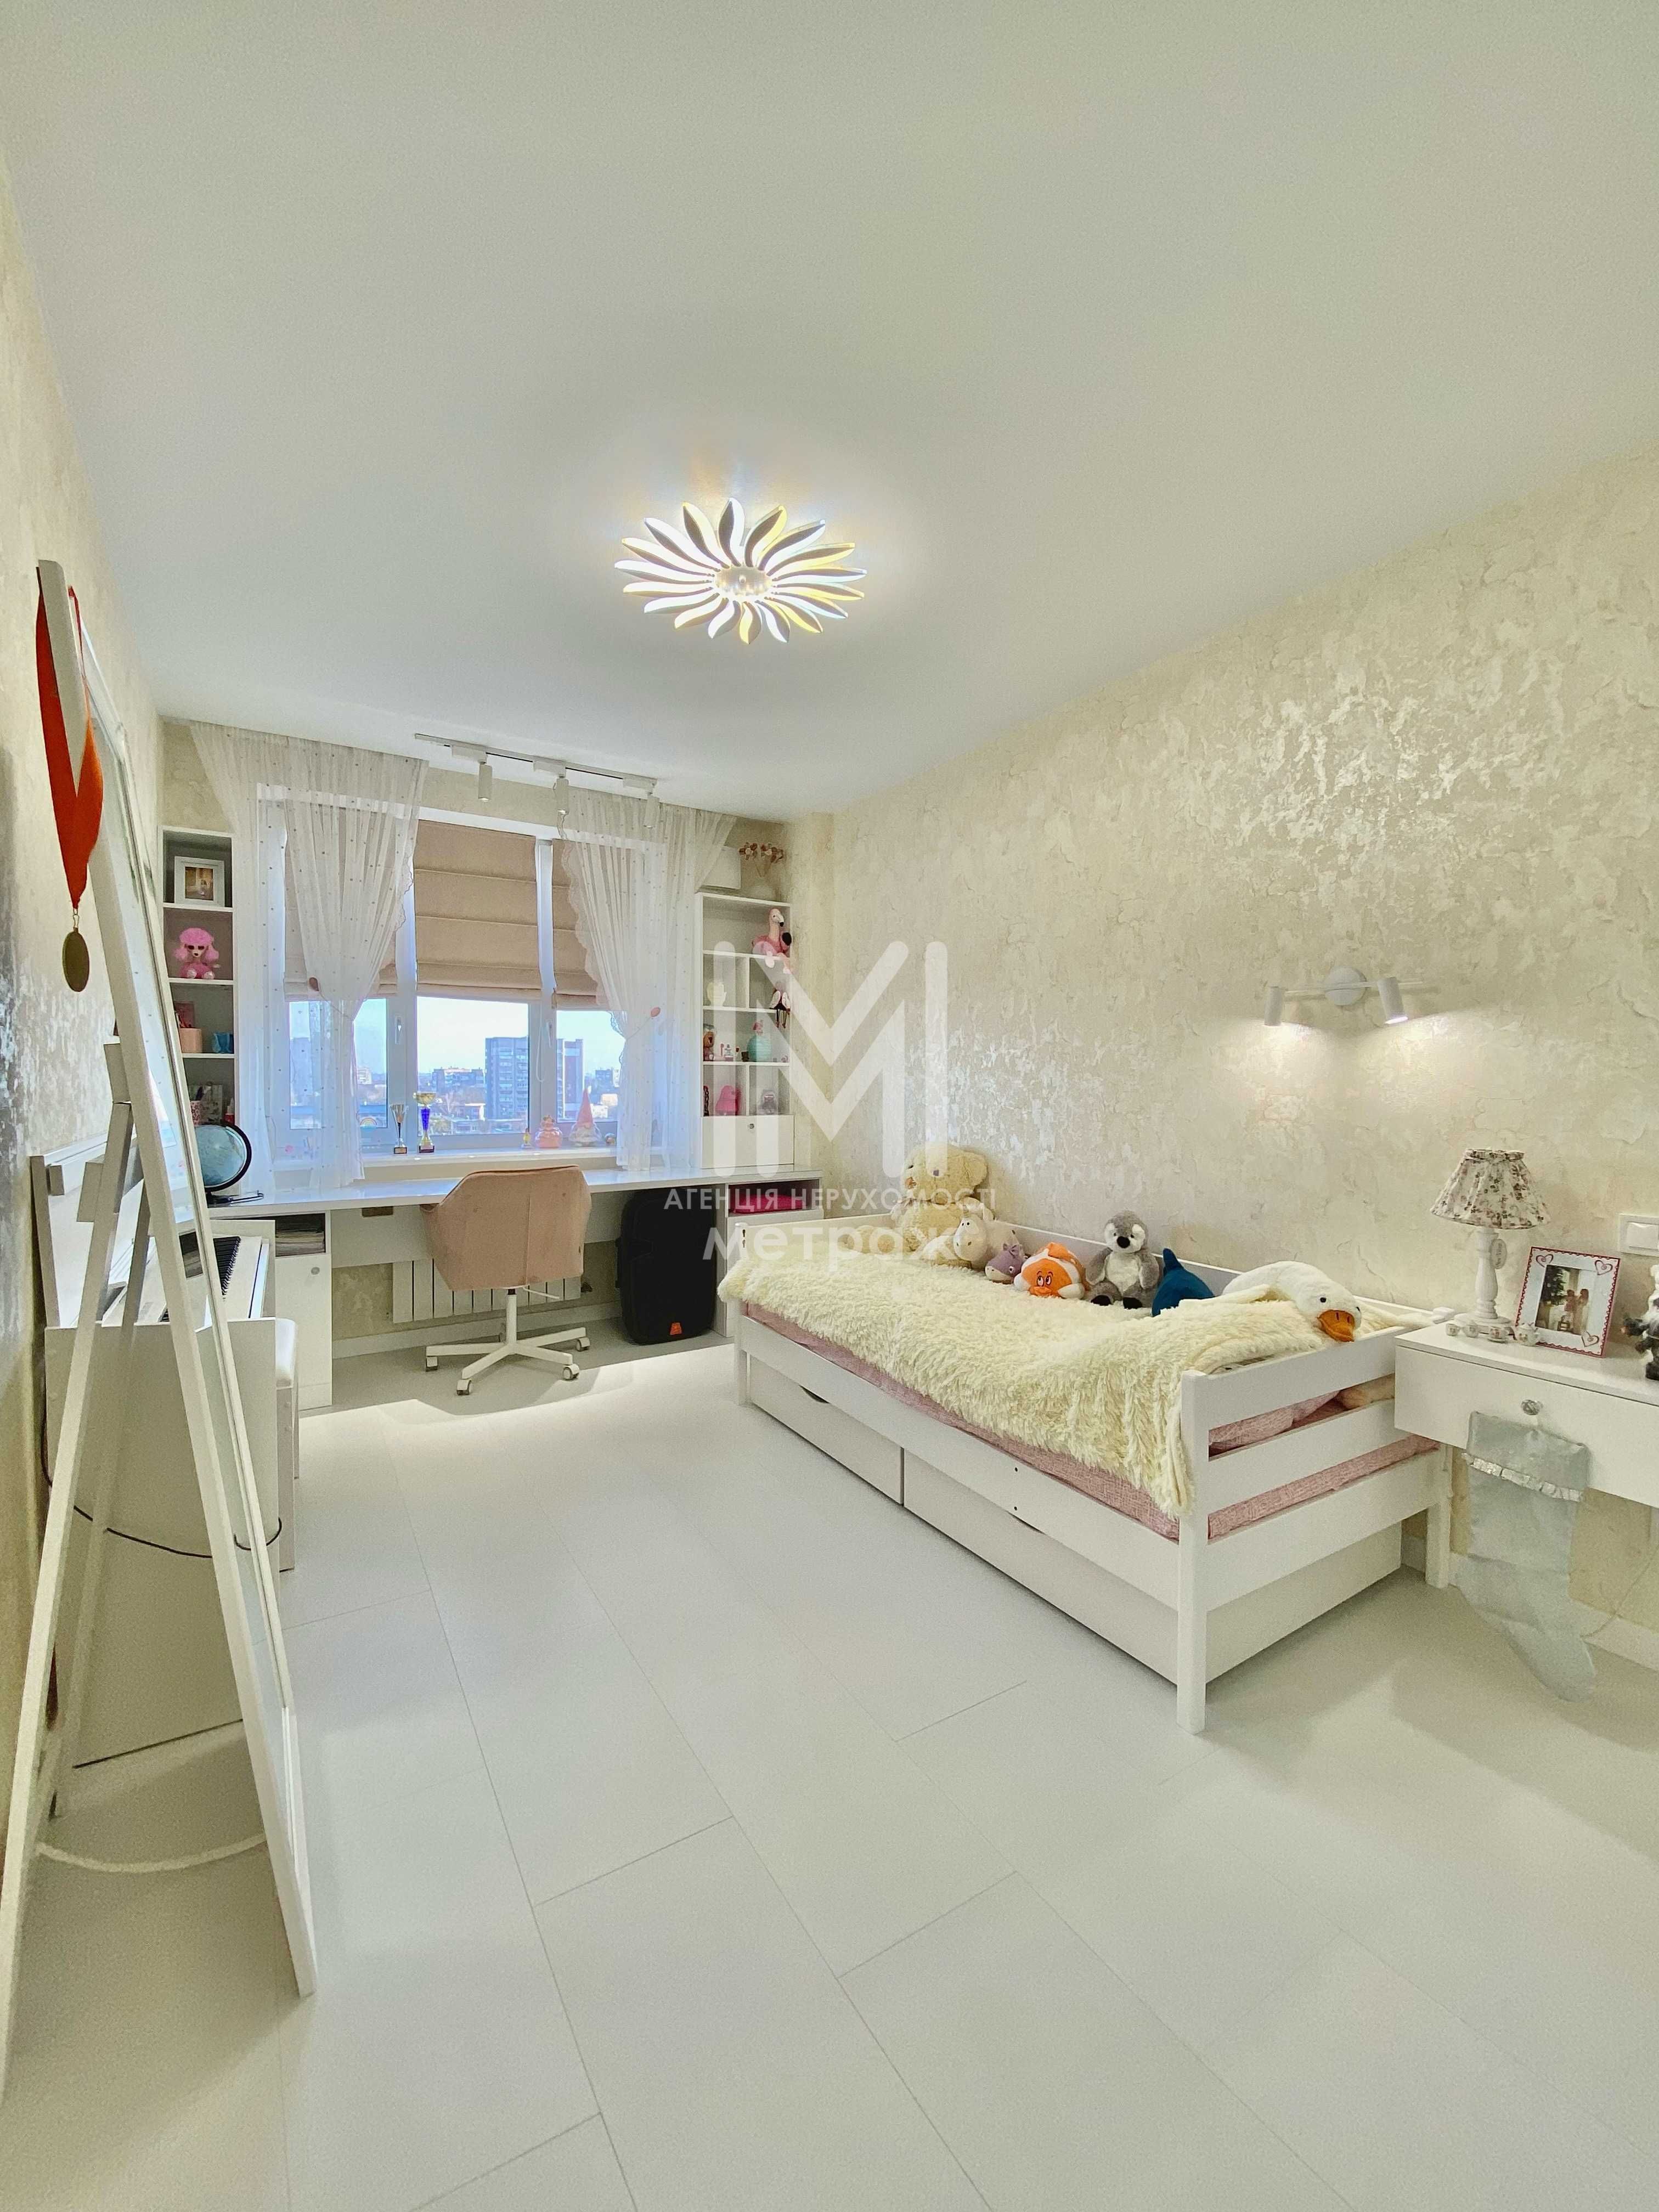 Продается уютная квартира площадью 65 м2 в живописном ЖК "Садовый»